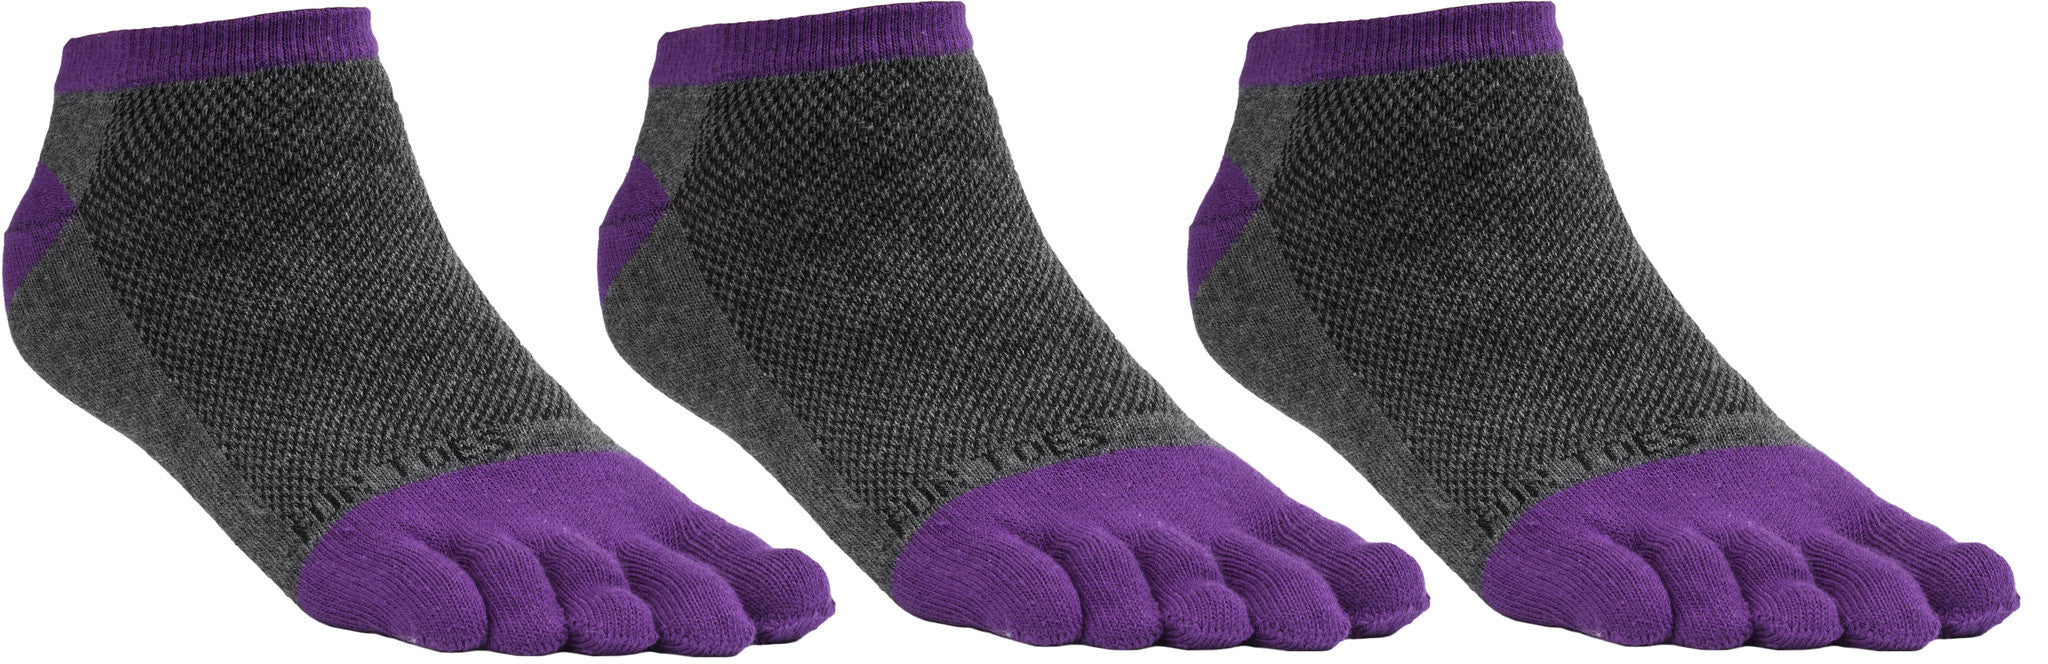 Women's Toe Socks for Running